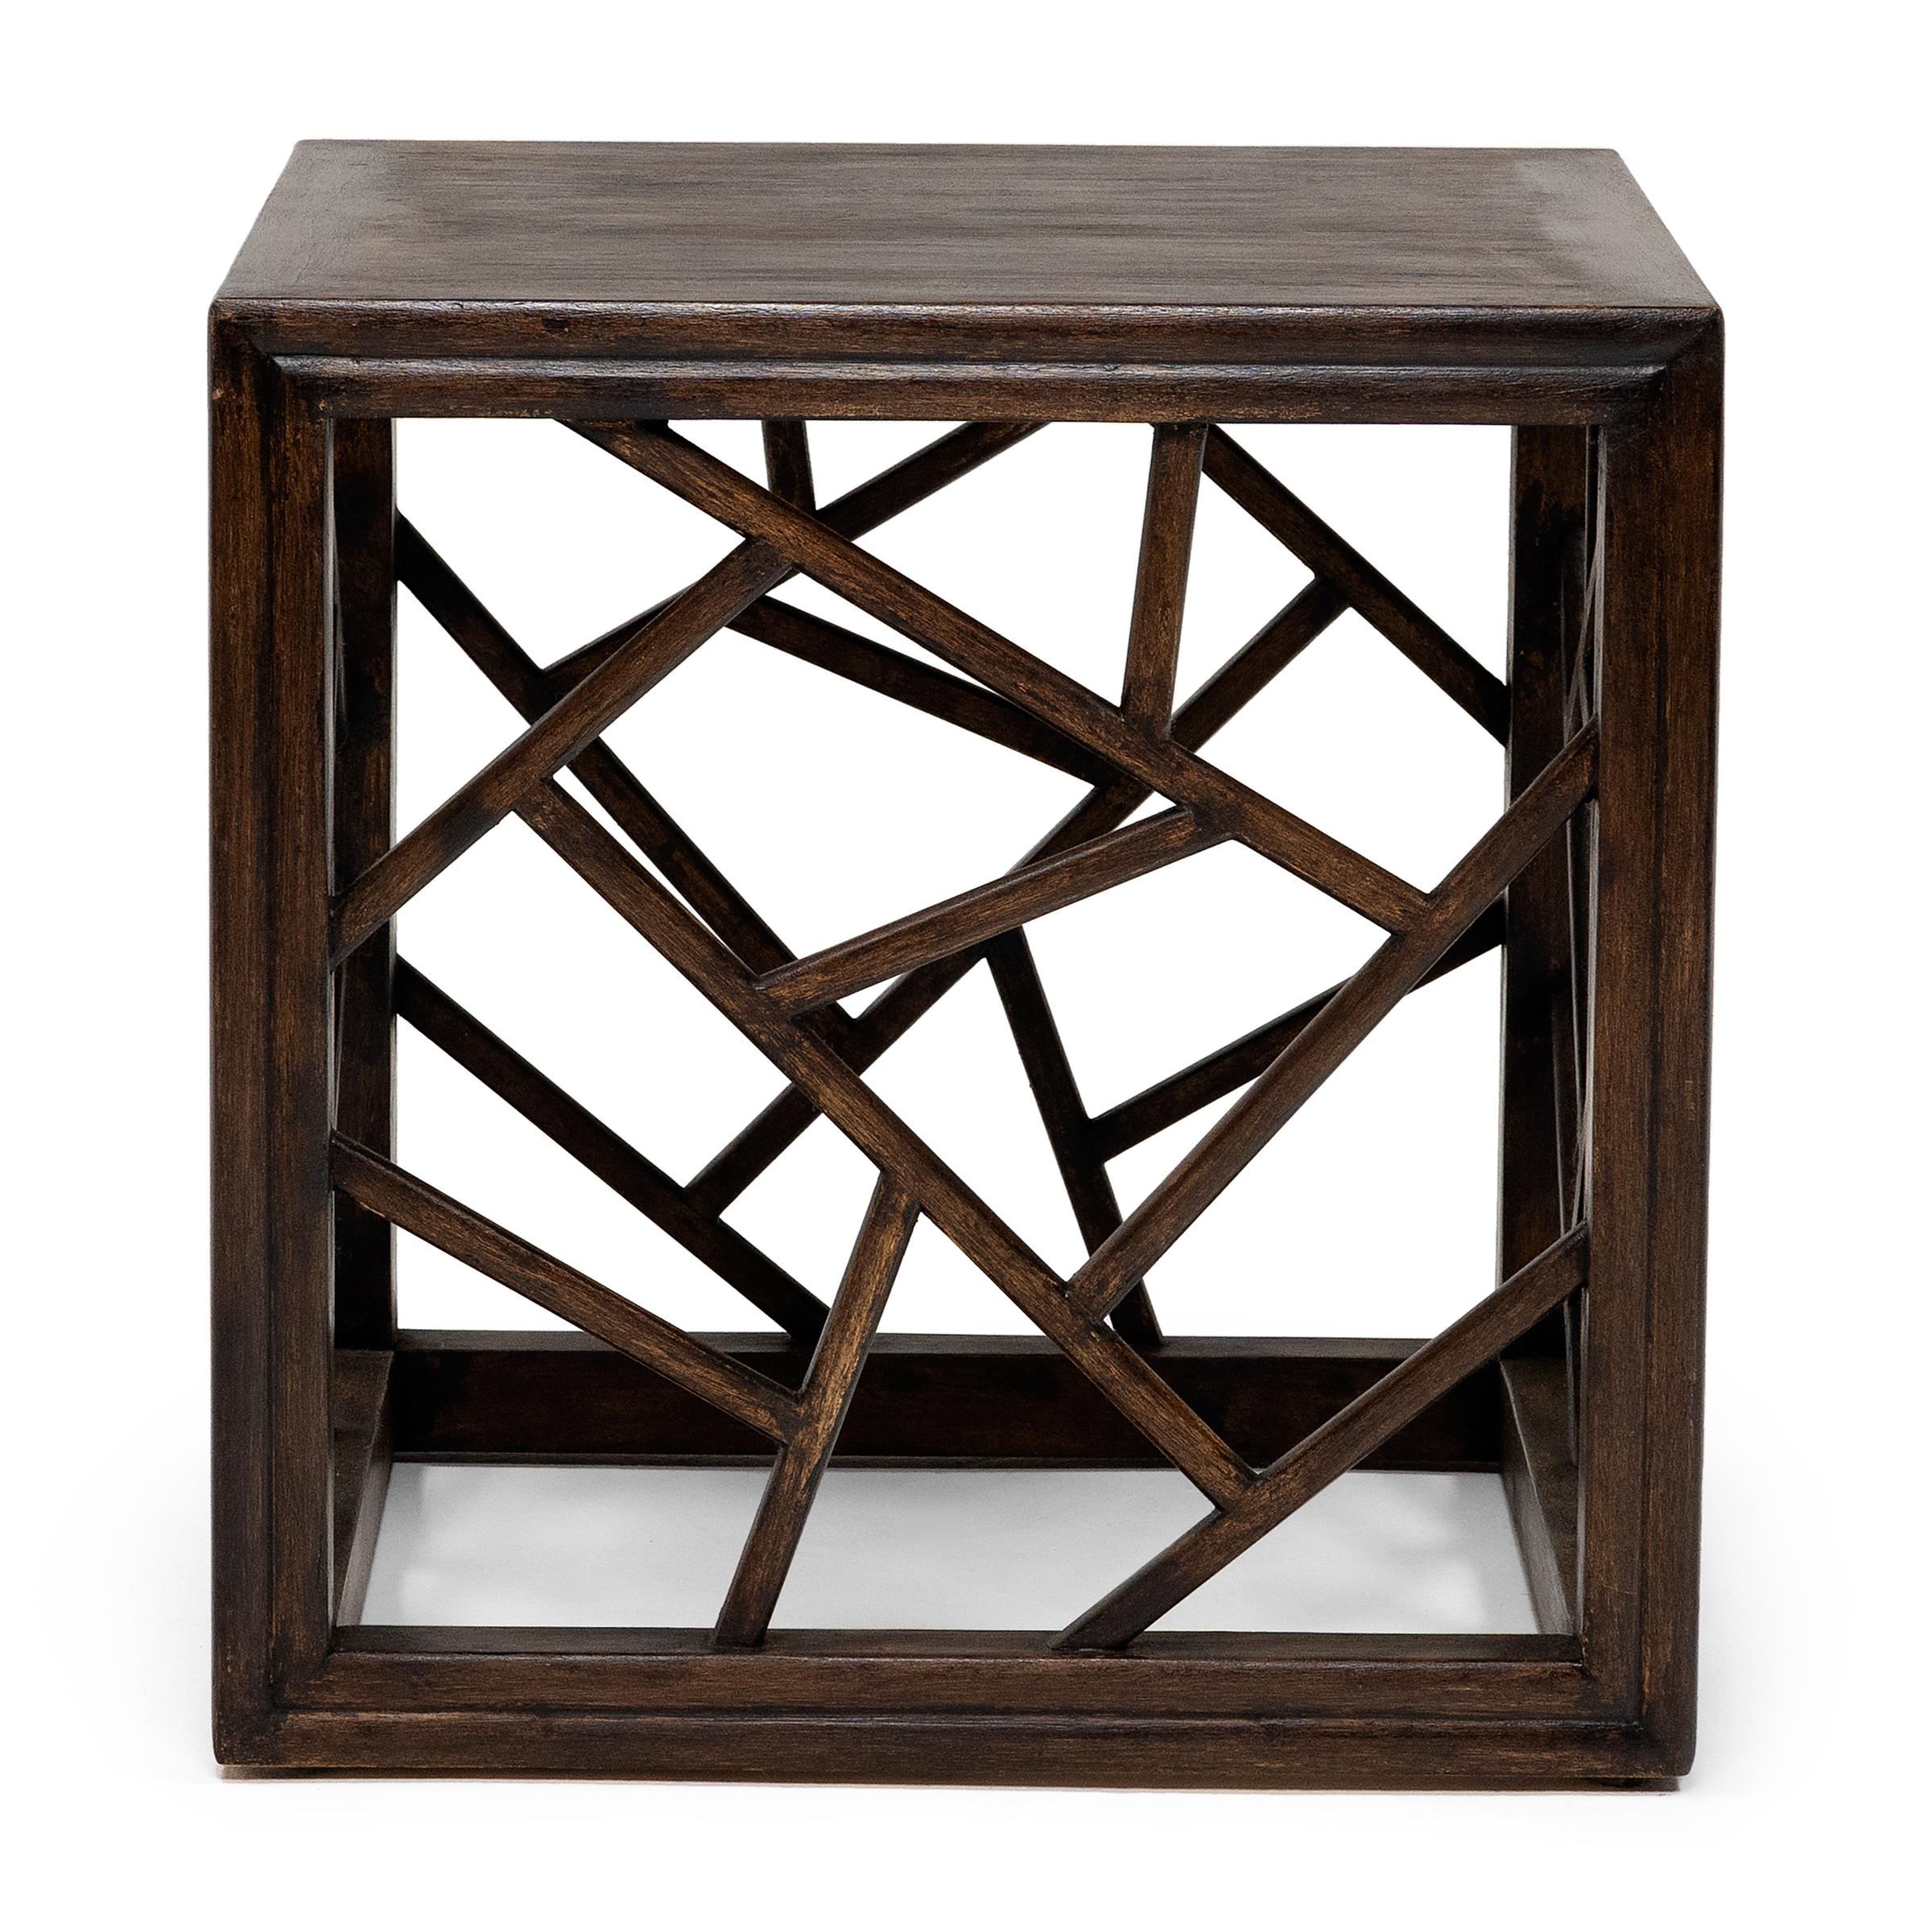 Cette table d'appoint basse honore les formes traditionnelles du mobilier chinois avec un simple cadre carré et des côtés en treillis de glace craquelée. Le treillis de glace craquelée, connu sous le nom de 